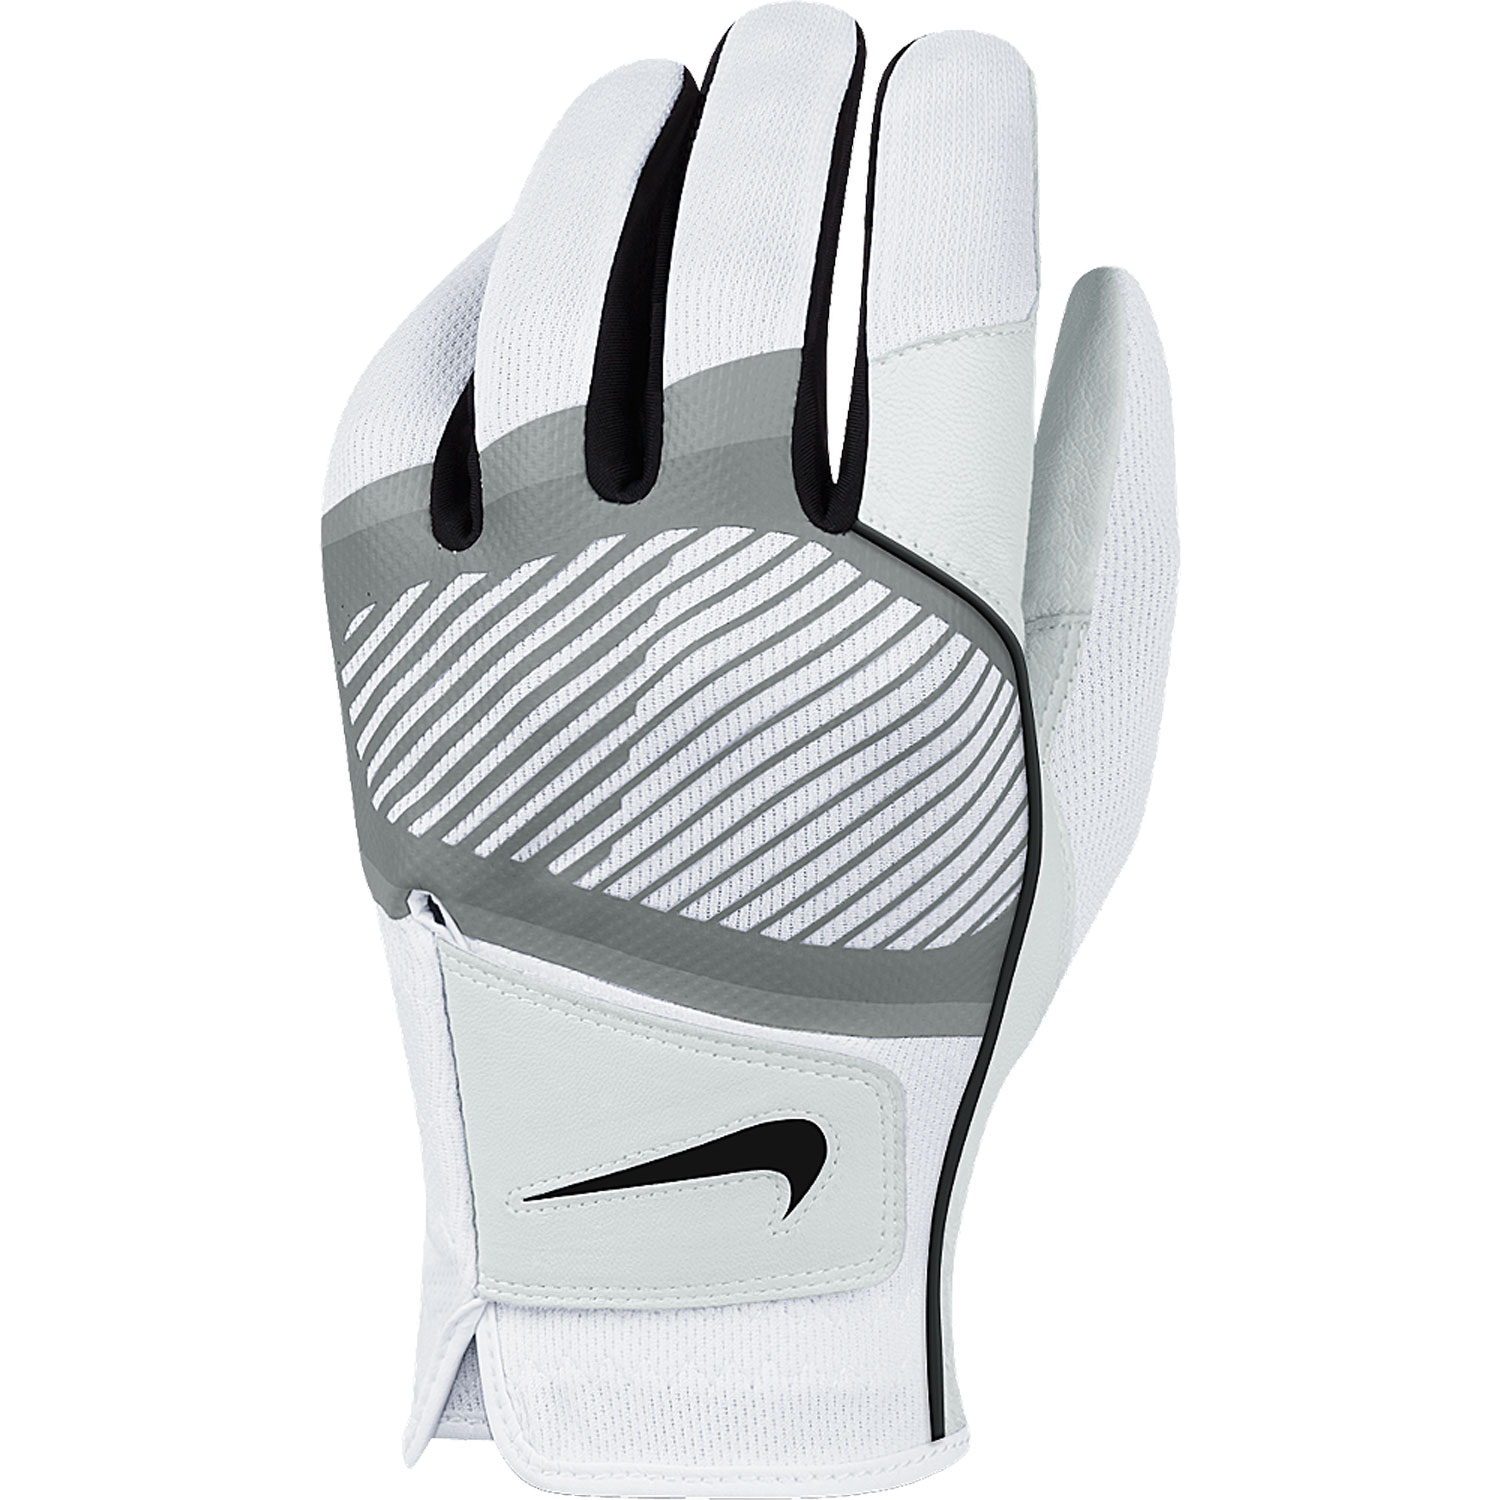 Dura Feel Golf Glove White/Black/Cool Grey Male